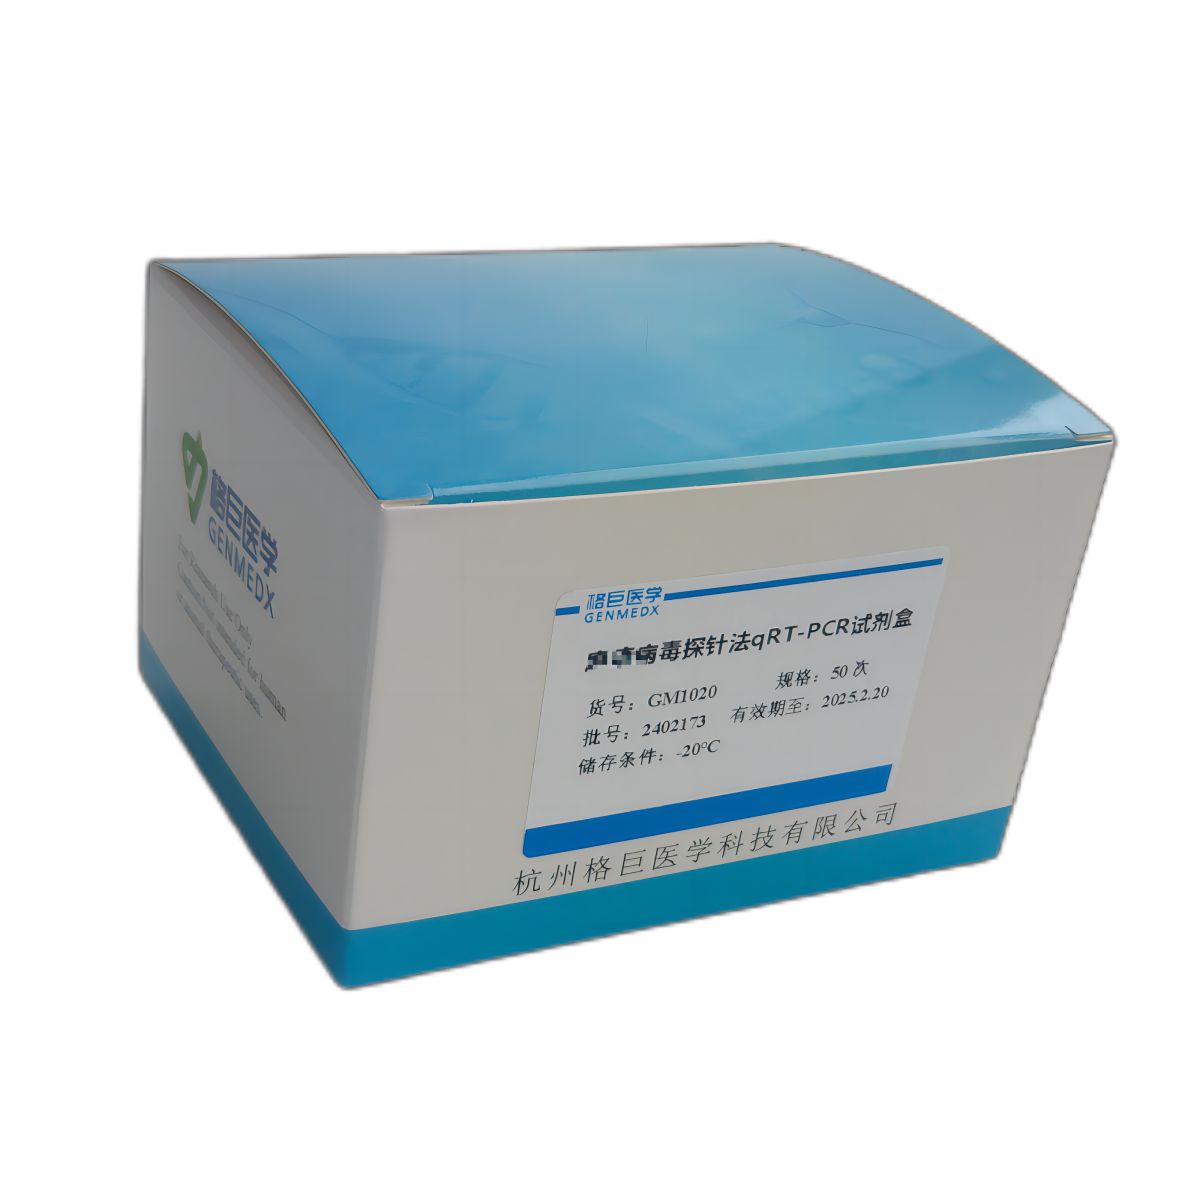 副溶血性弧菌耐热性类溶血毒素基因（trh1&2）探针法荧光定量PCR试剂盒